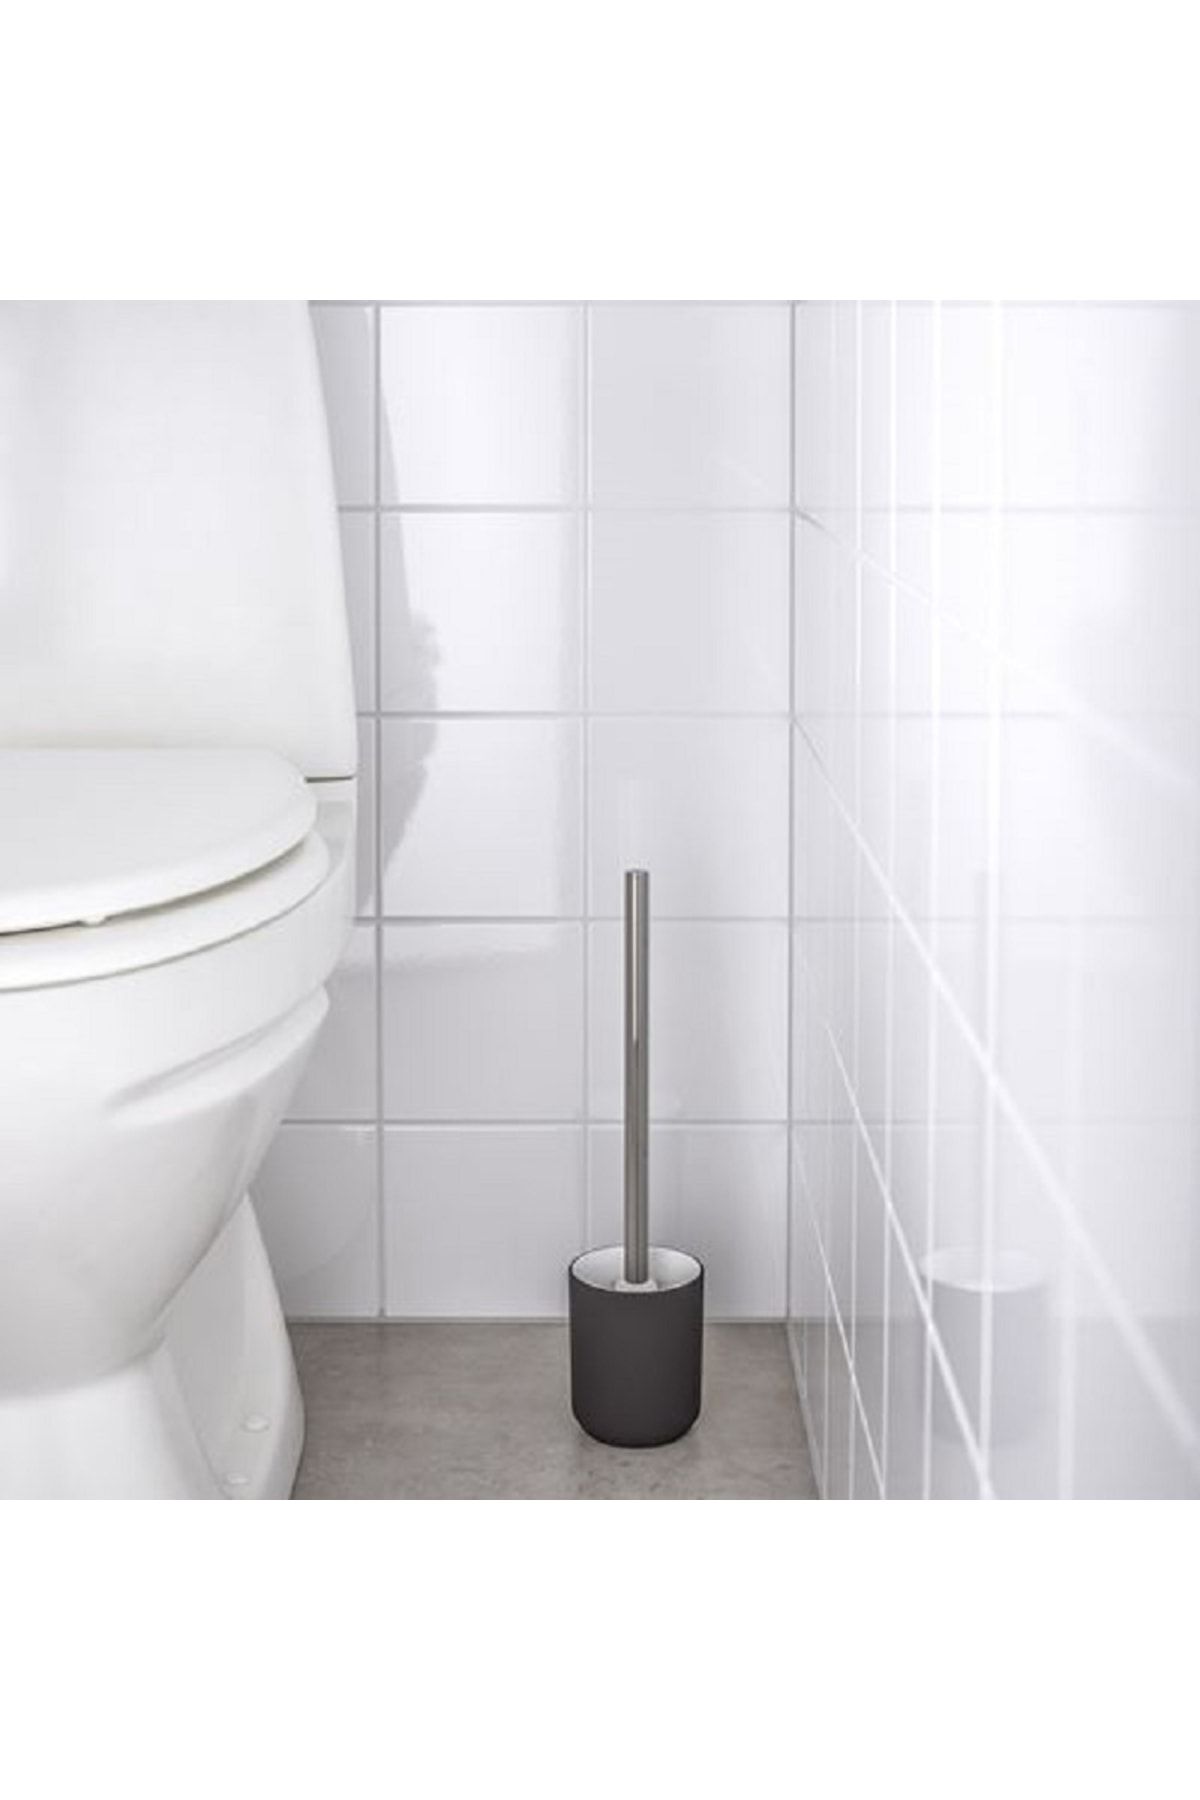 IKEA Ekoln Stoneware Seramik Tuvalet Fırçası Koyu Gri